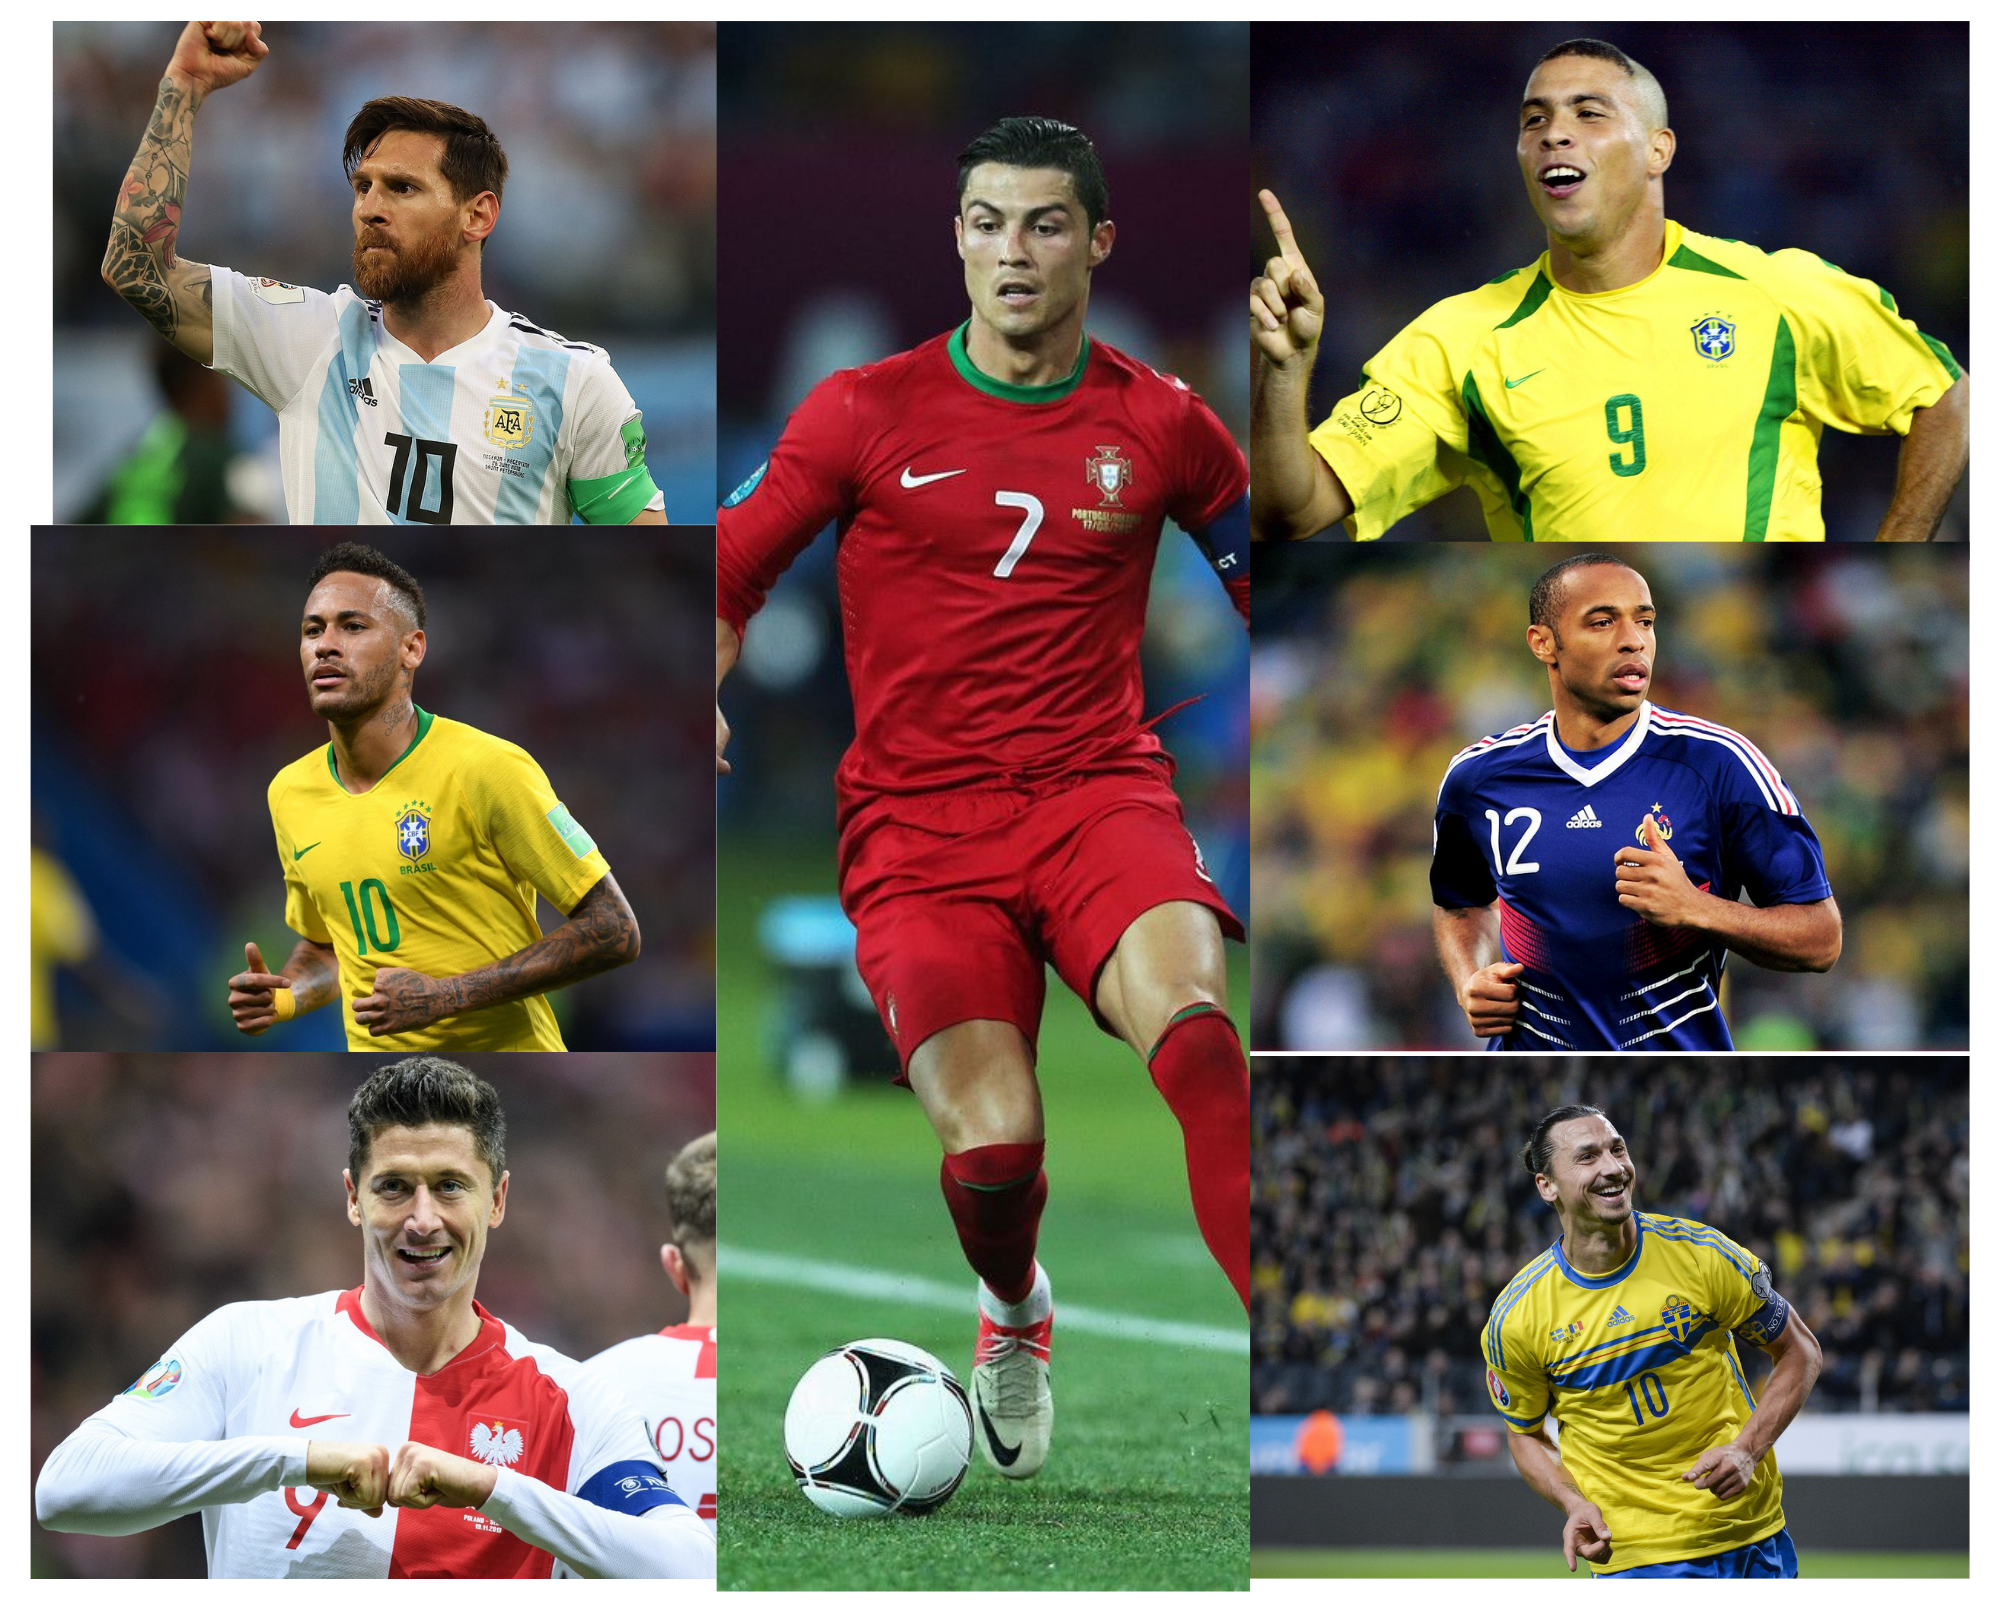 Рекорд Криштиану Роналду, значимость южноамериканских футболистов. Так ли велик португалец?